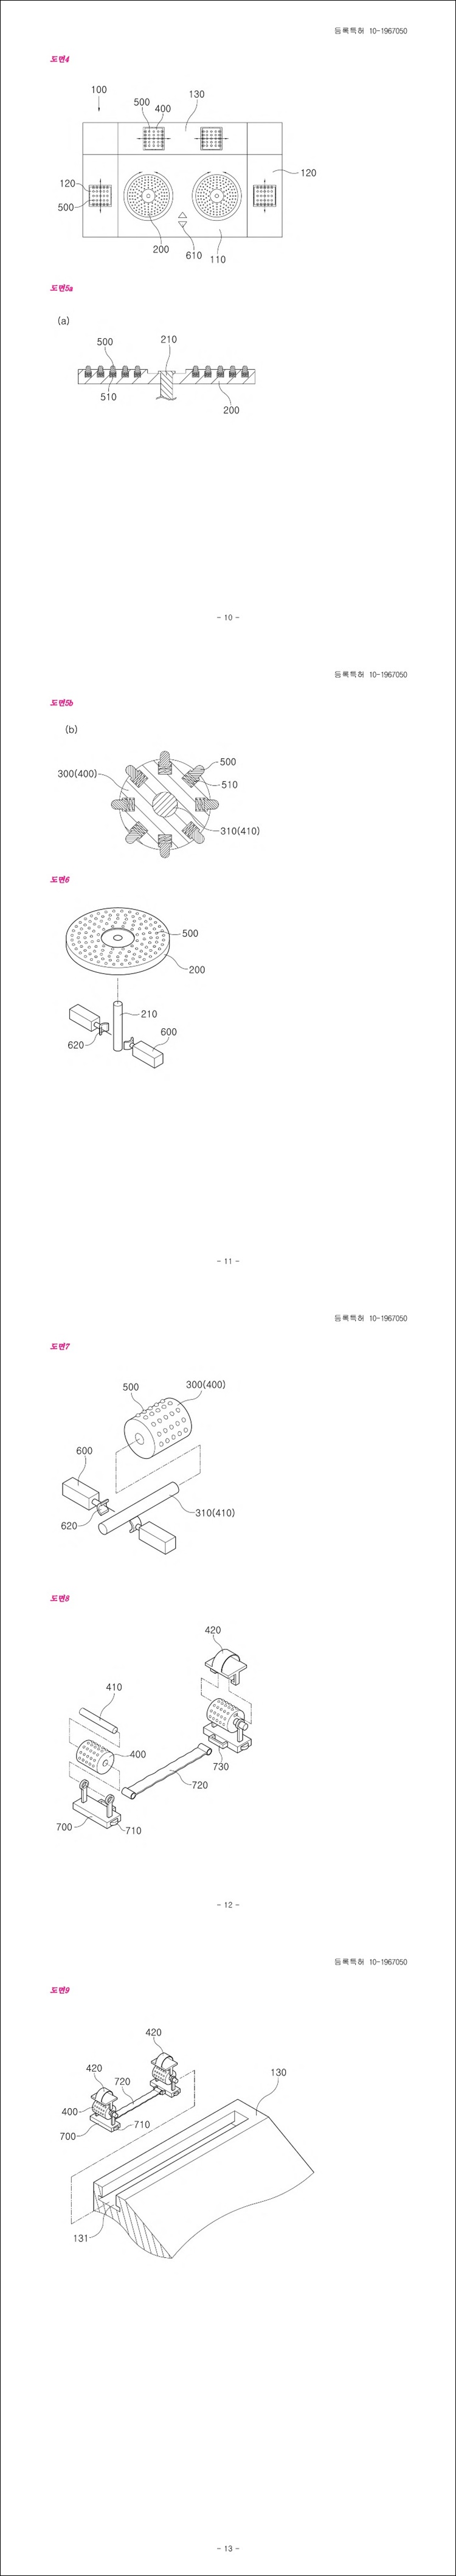 특허 제10-1967050호(복합형 하체 운동 기구, 박주홍)